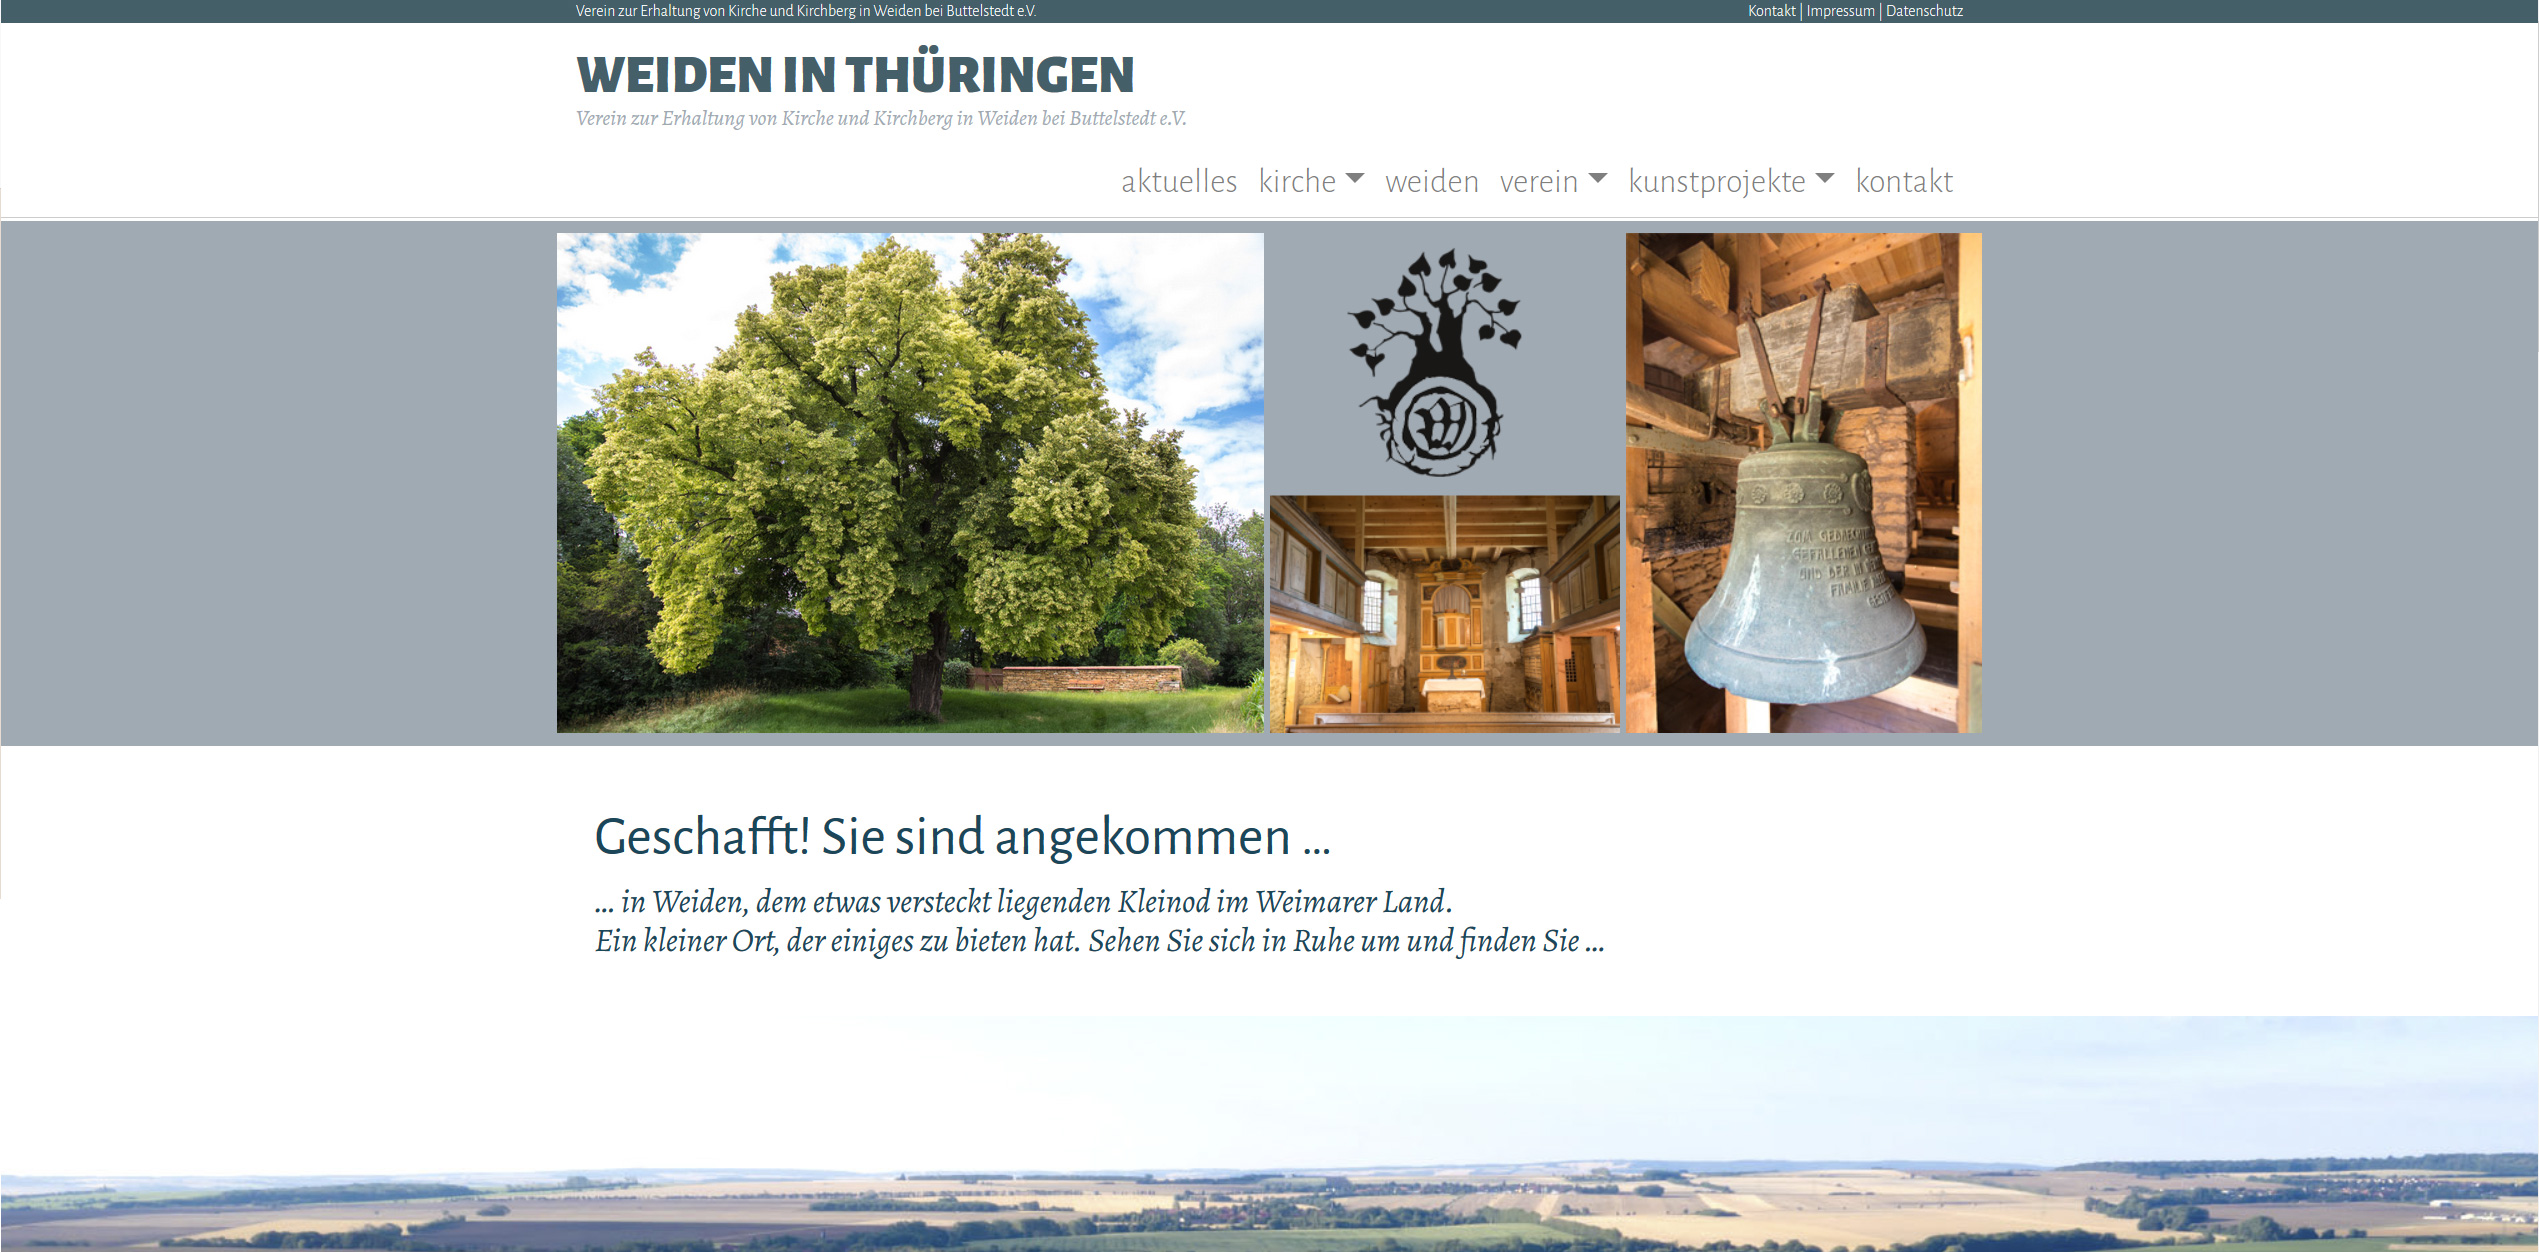 Verein zur Erhaltung von Kirche und Kirchberg in Weiden bei Buttelstedt e.V.